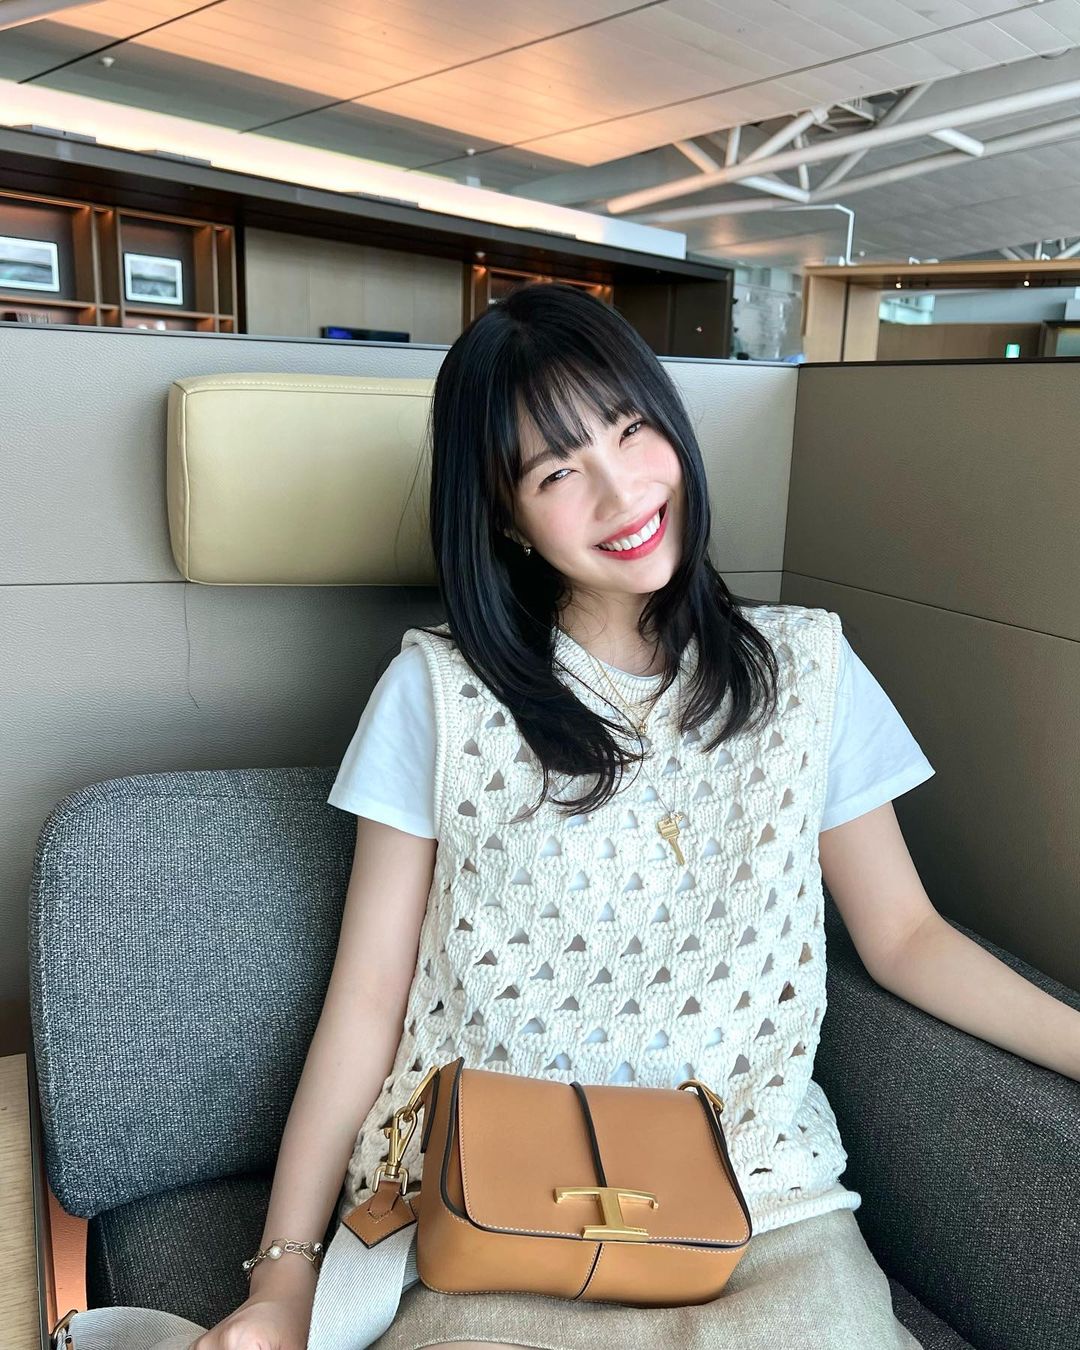 Джой из Red Velvet очаровательно улыбается на новых фотографиях из соцсетей